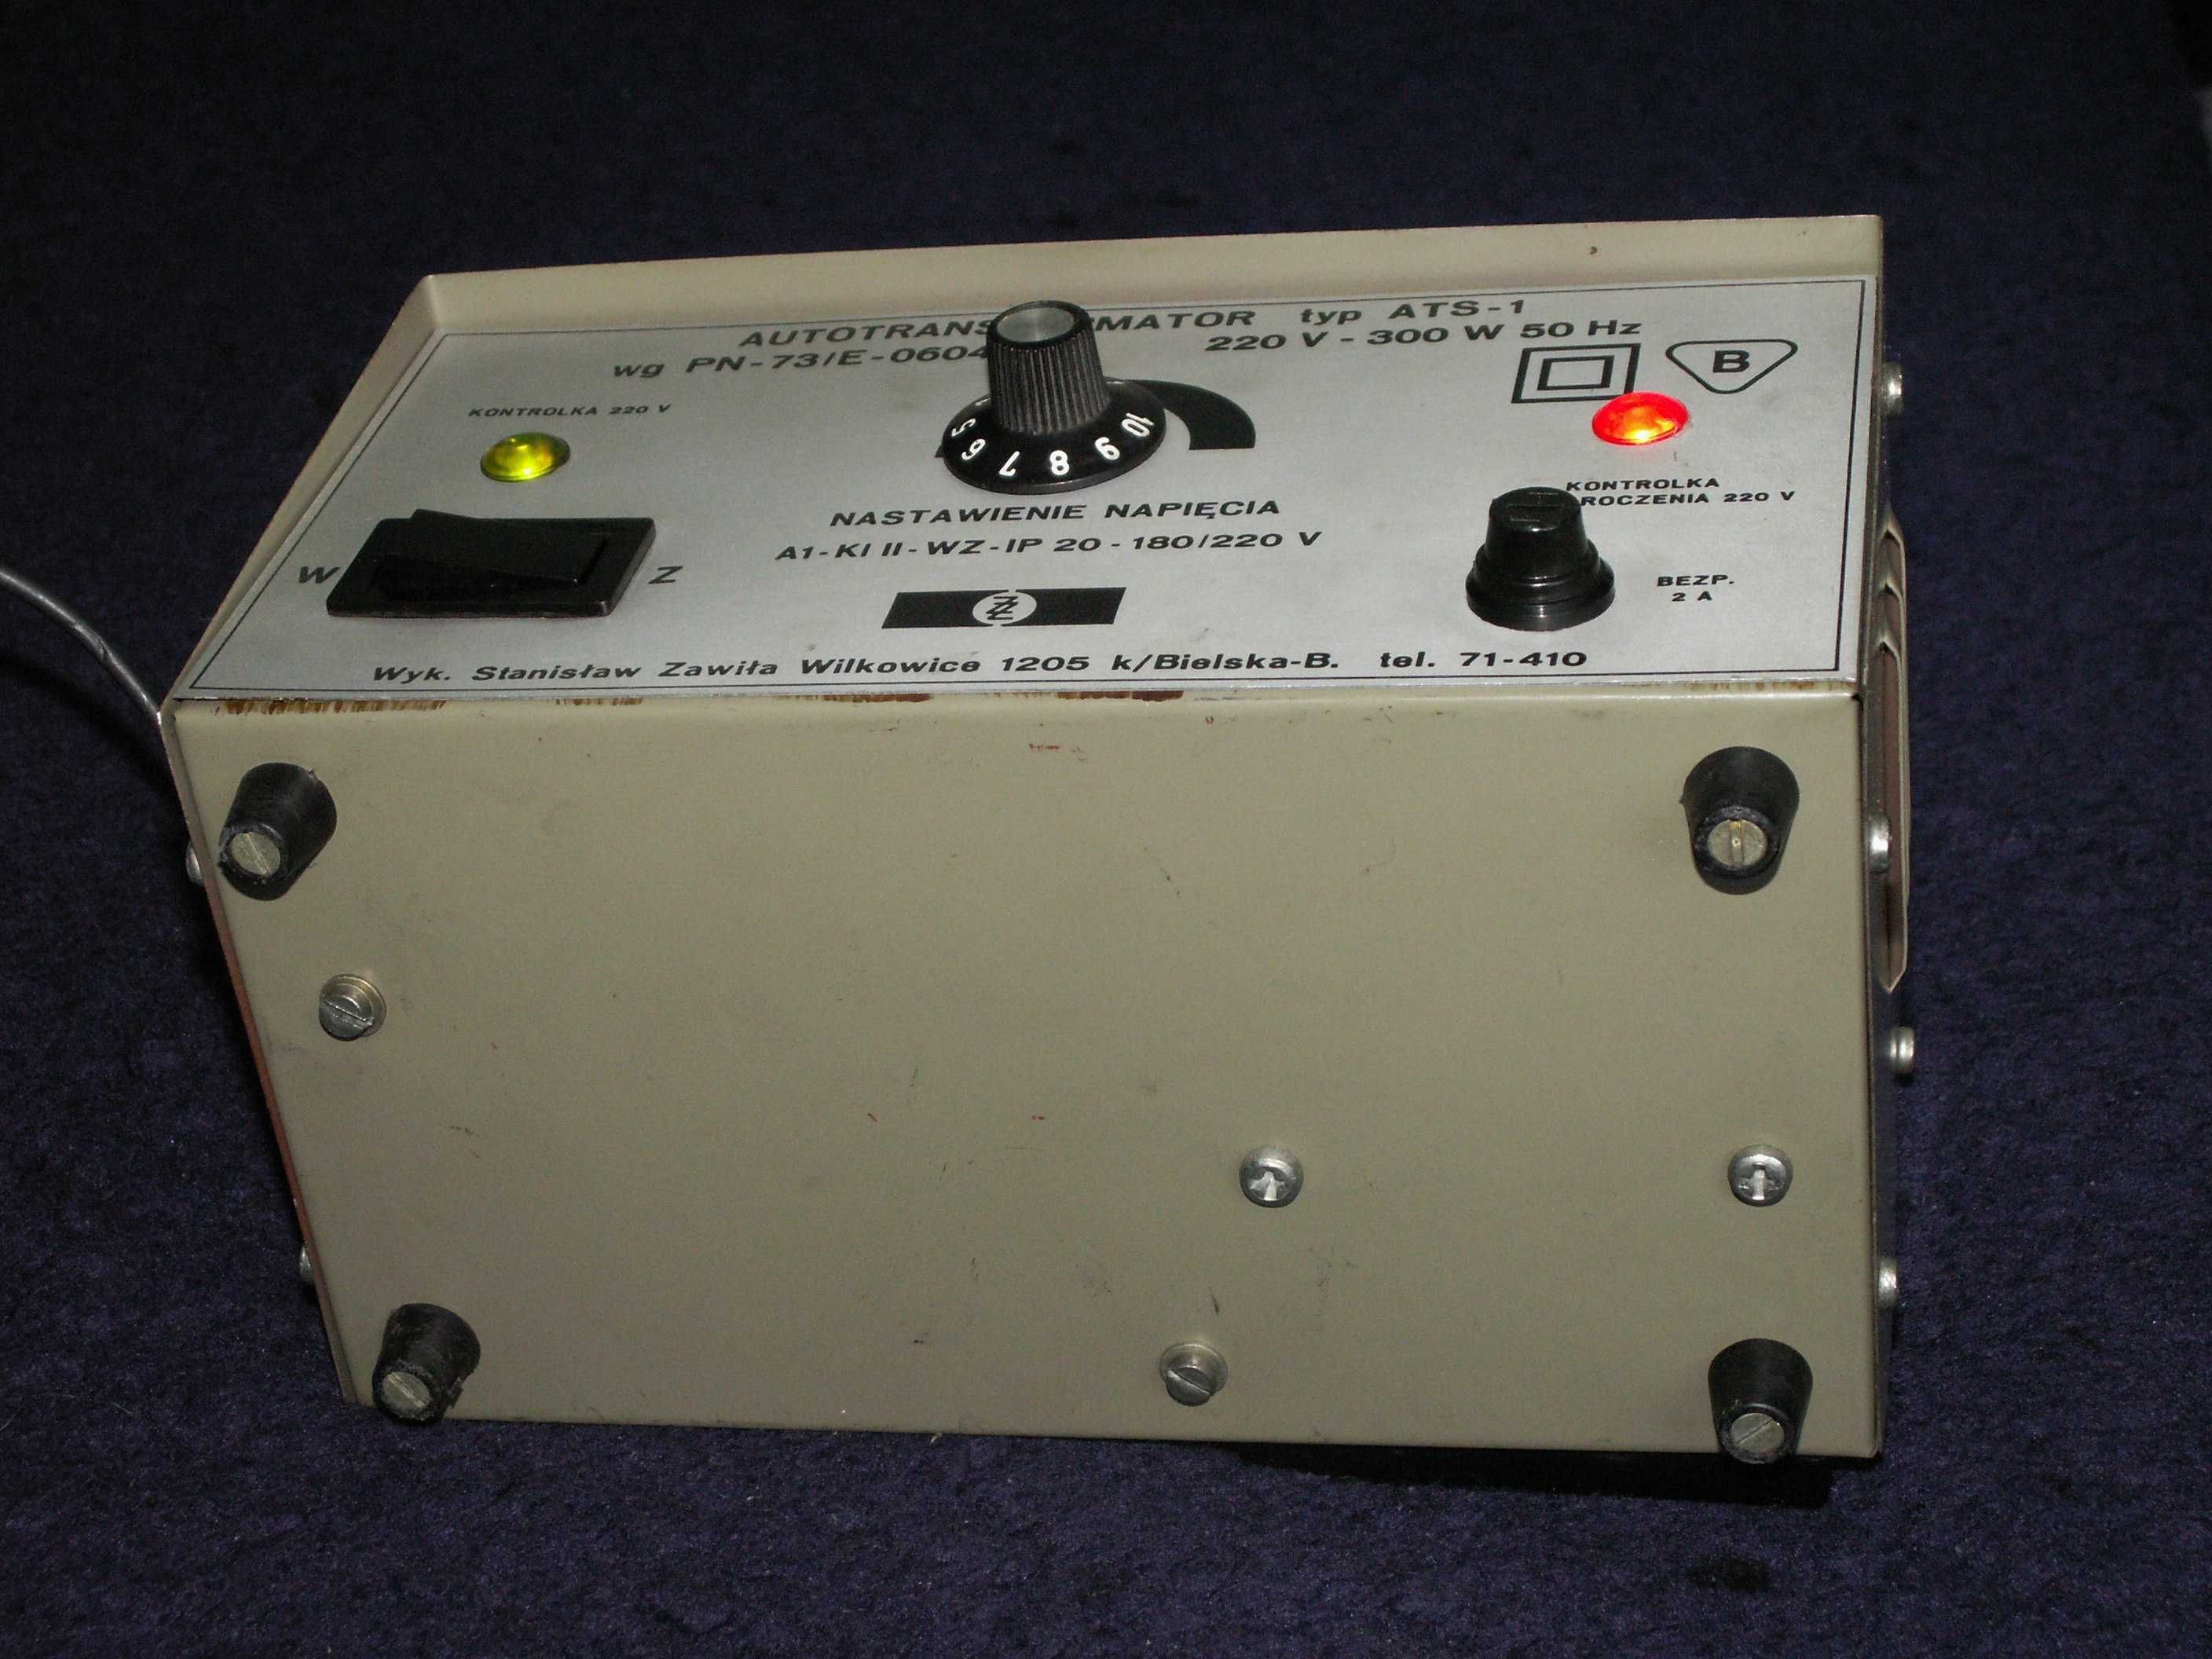 Autotransformator - ATS-1 z płynną regulacją 220v - 300W 50Hz Sprawny